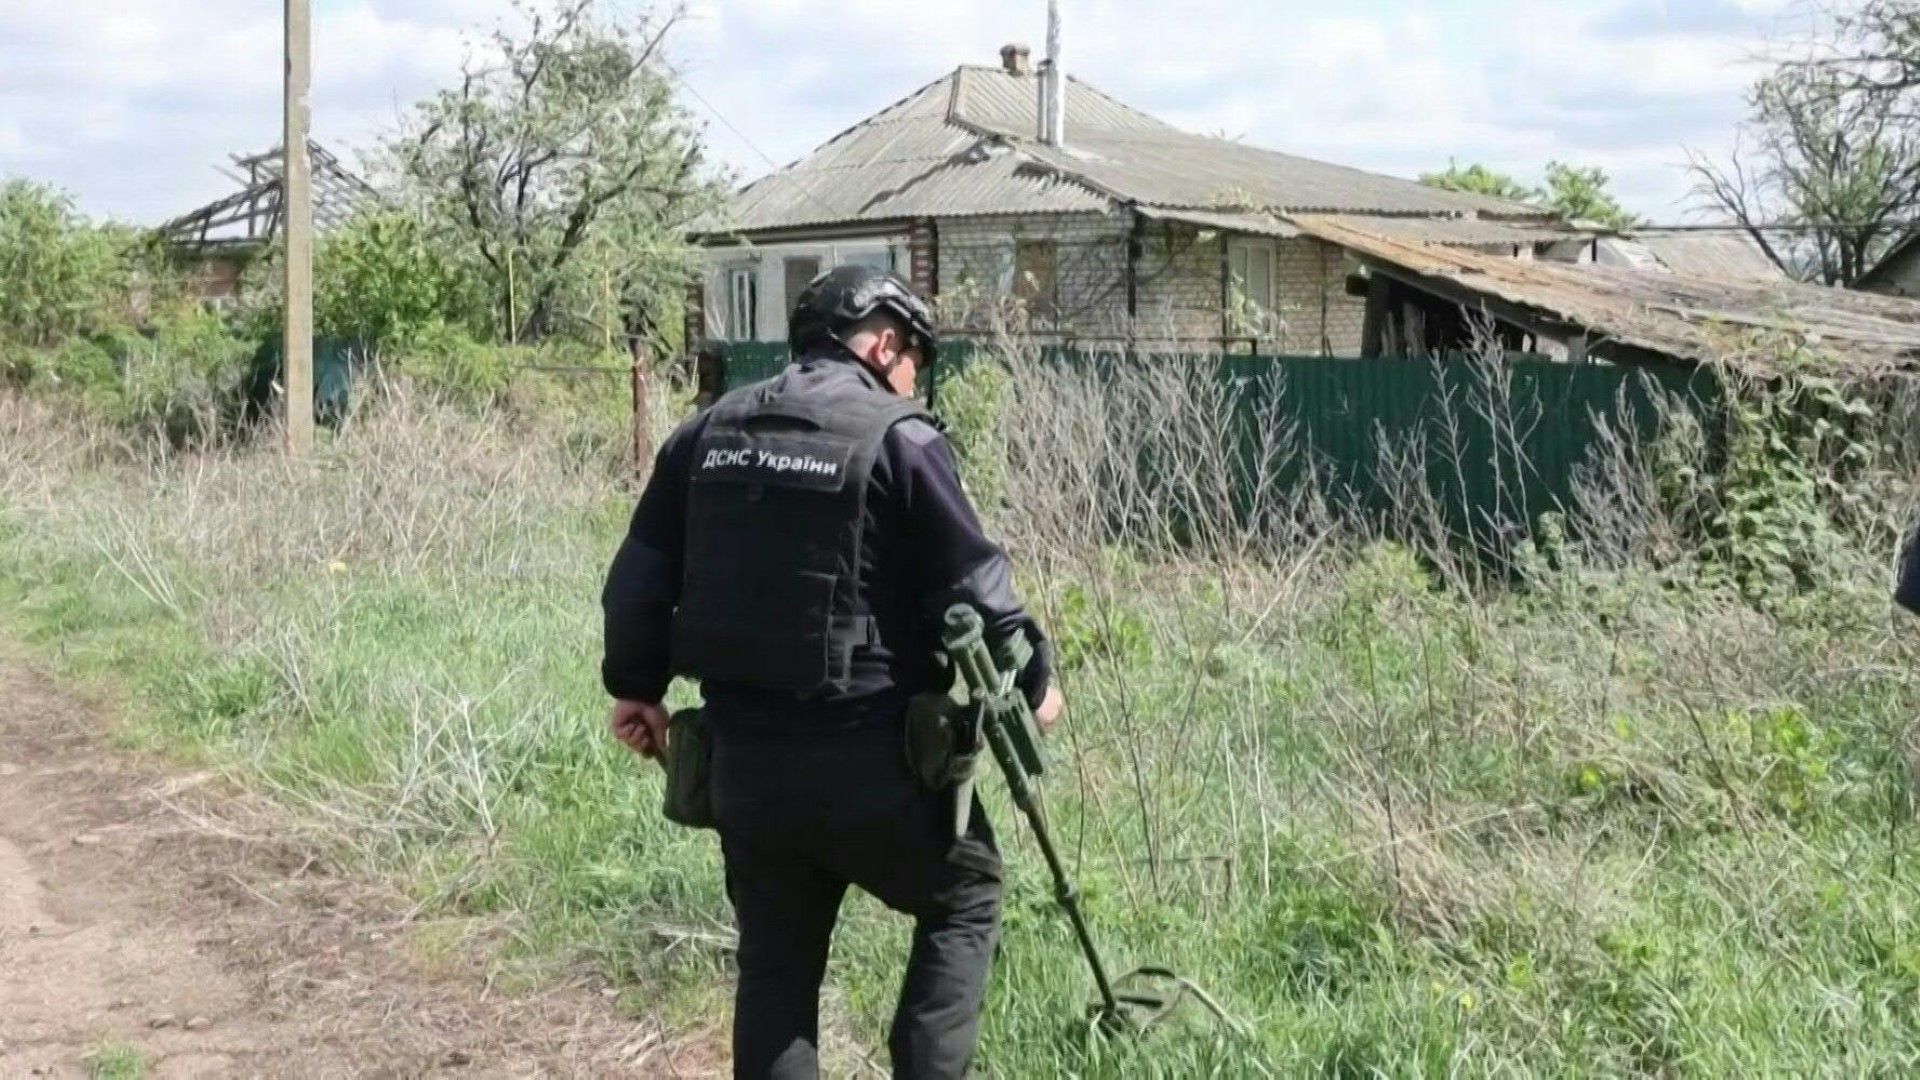 Ukraine: Sprengsätze gefährden Dorfbewohner